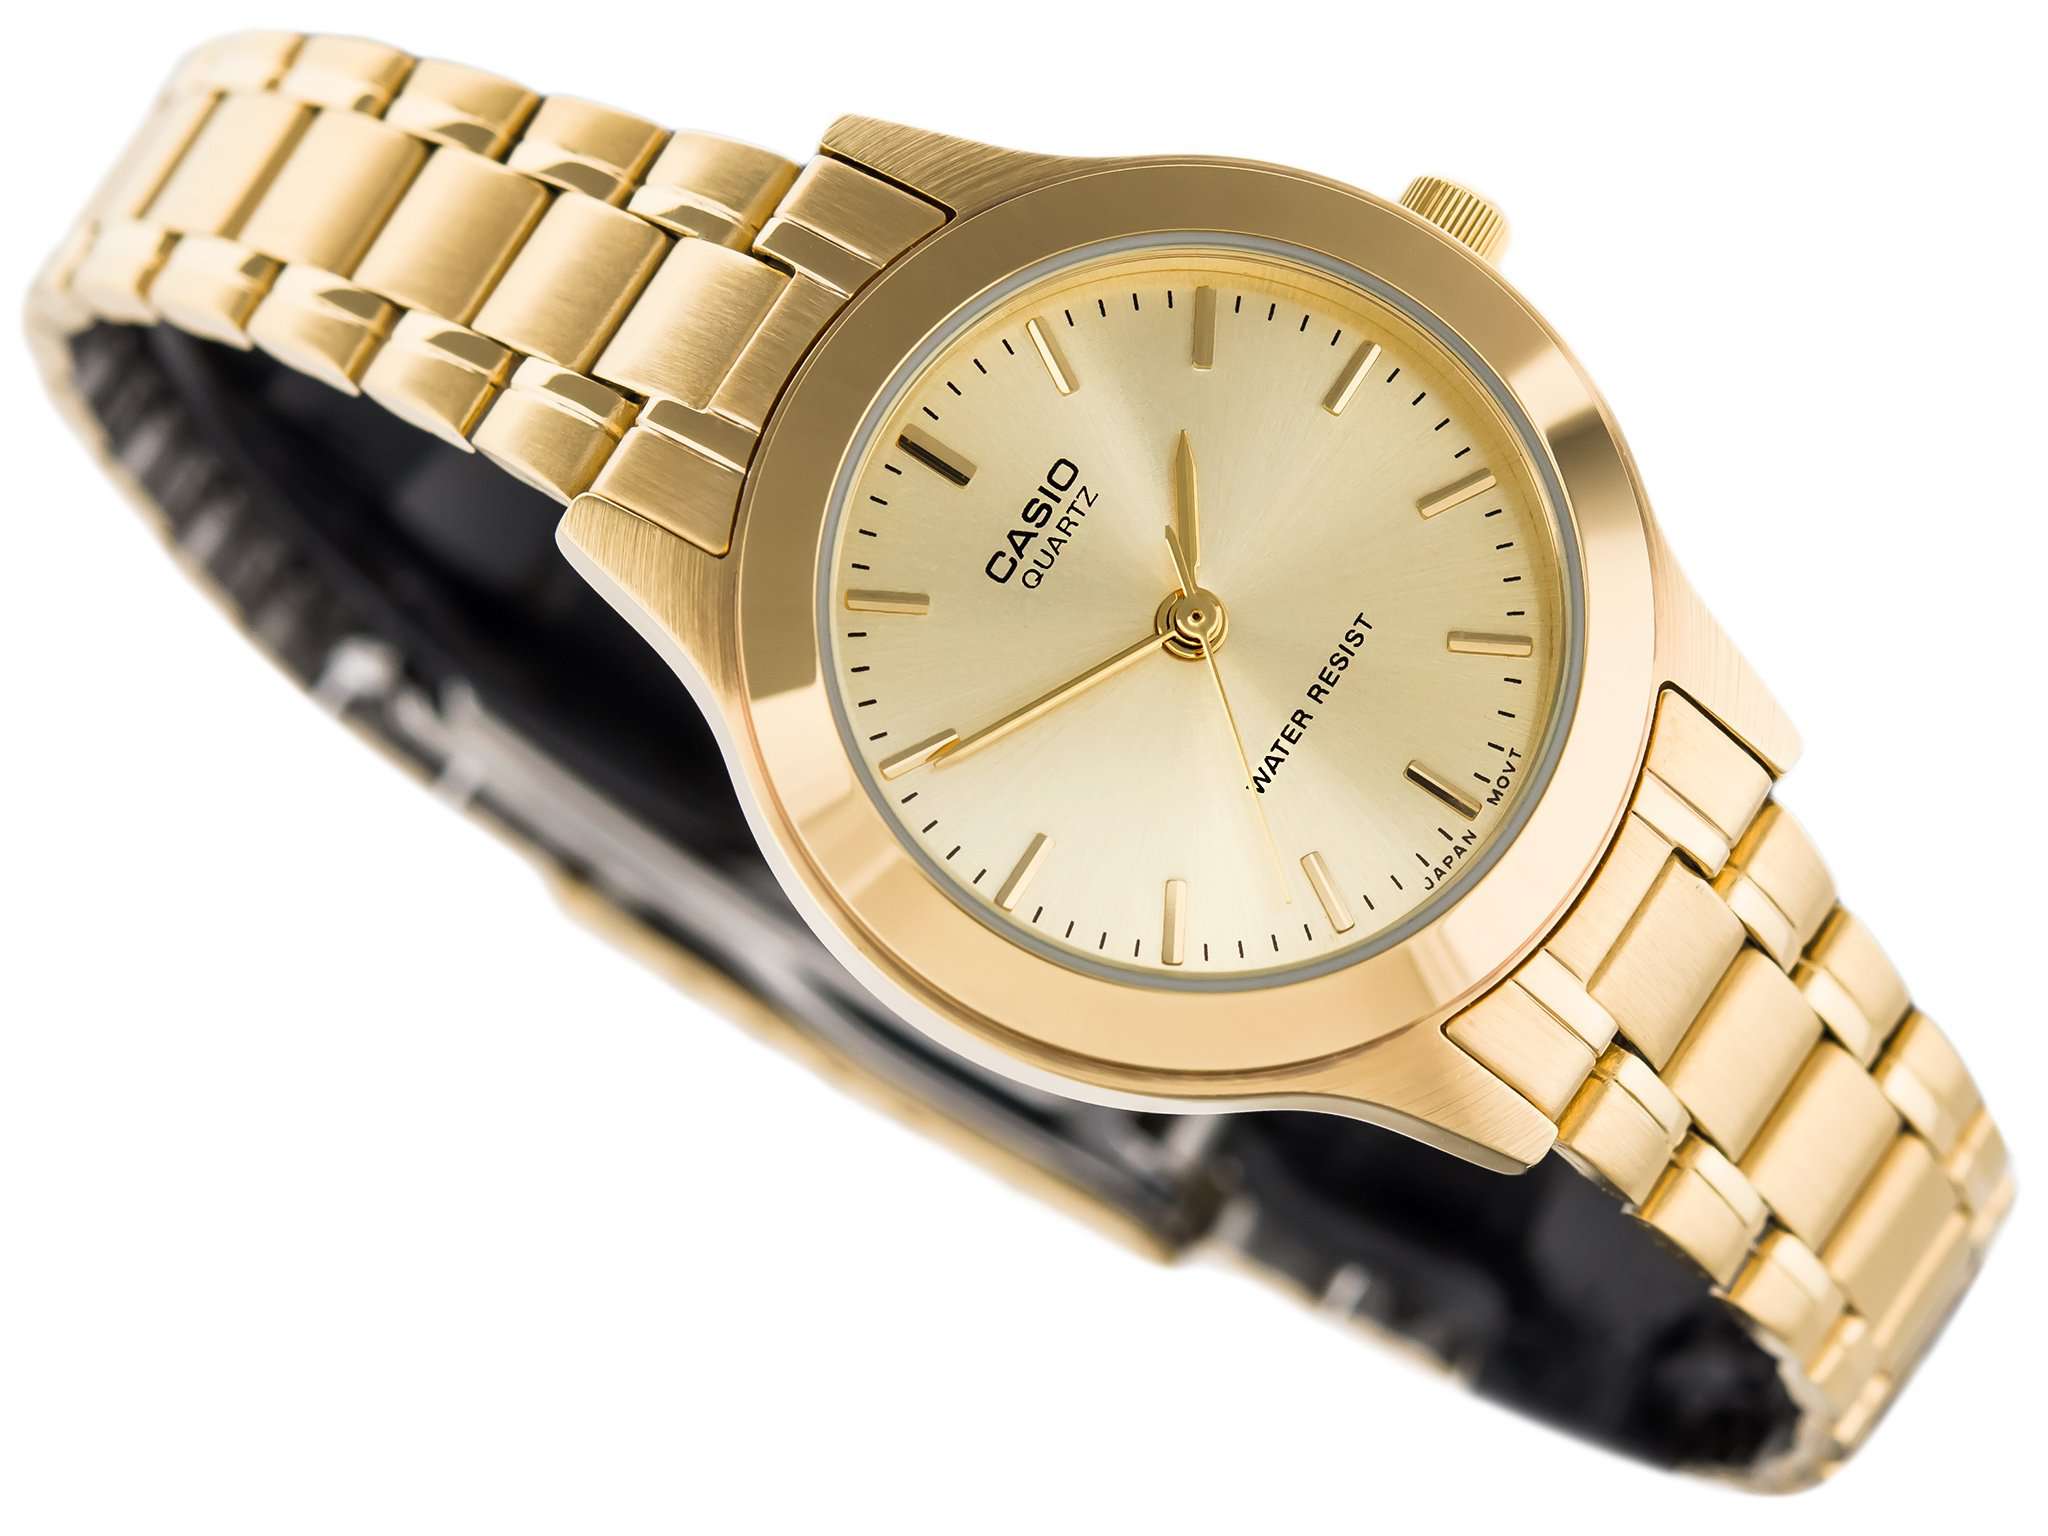 Casio Vintage LTP-1128N-9ARDF Women's Gold Stainless Watch for Women-Watch Portal Philippines